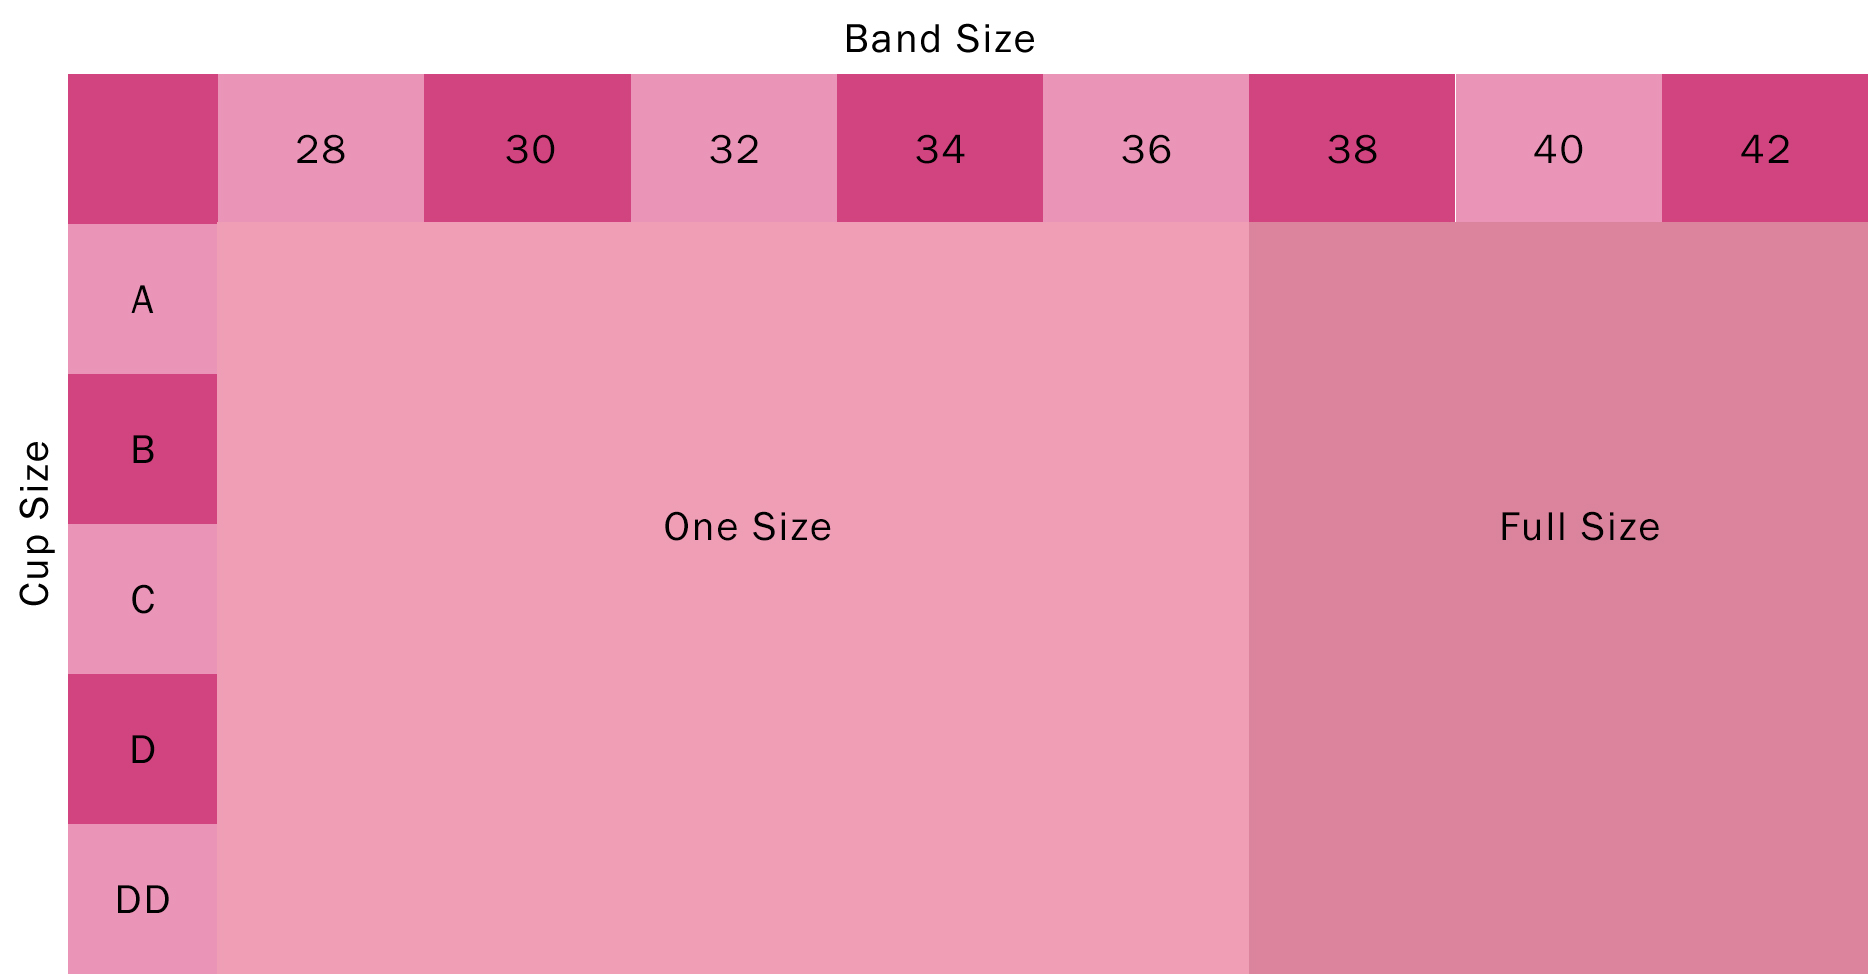 Bra Size Chart Pink